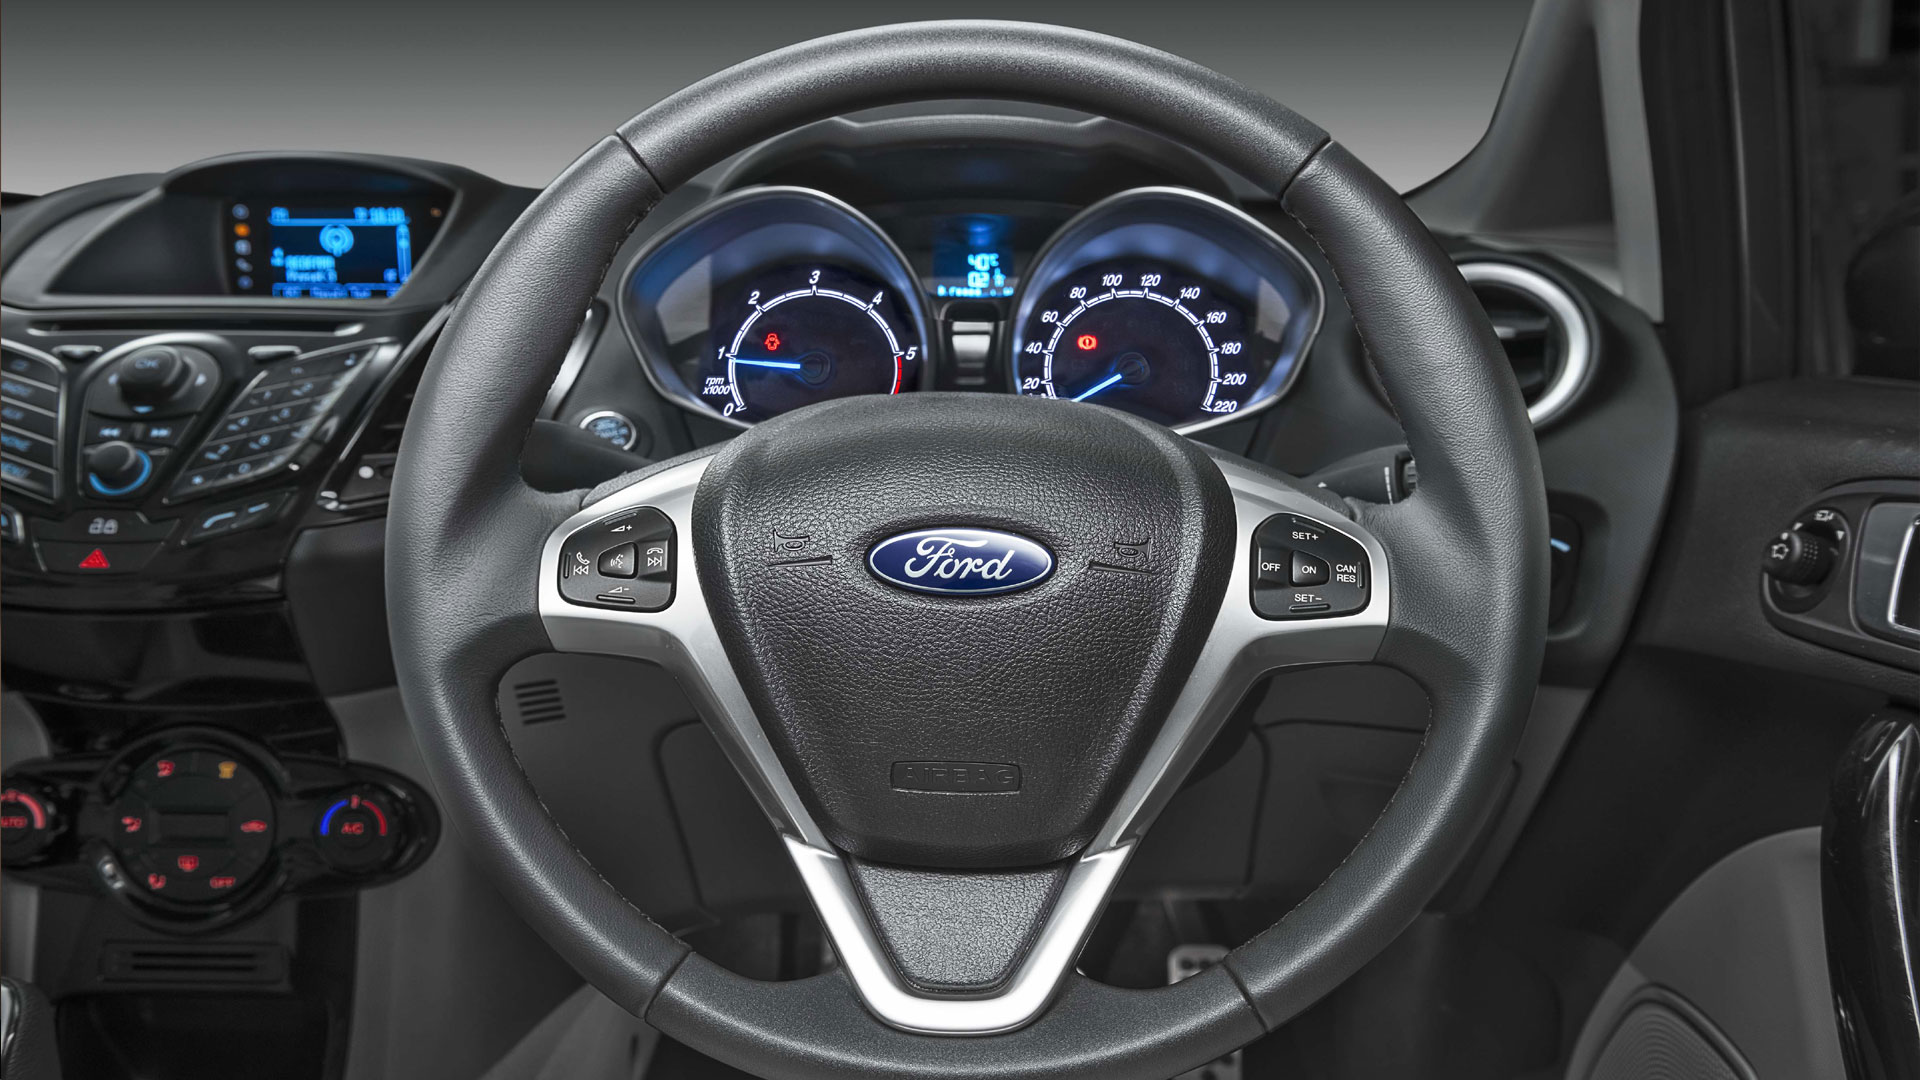 Ford-Fiesta-2014-Ambiente  Compare